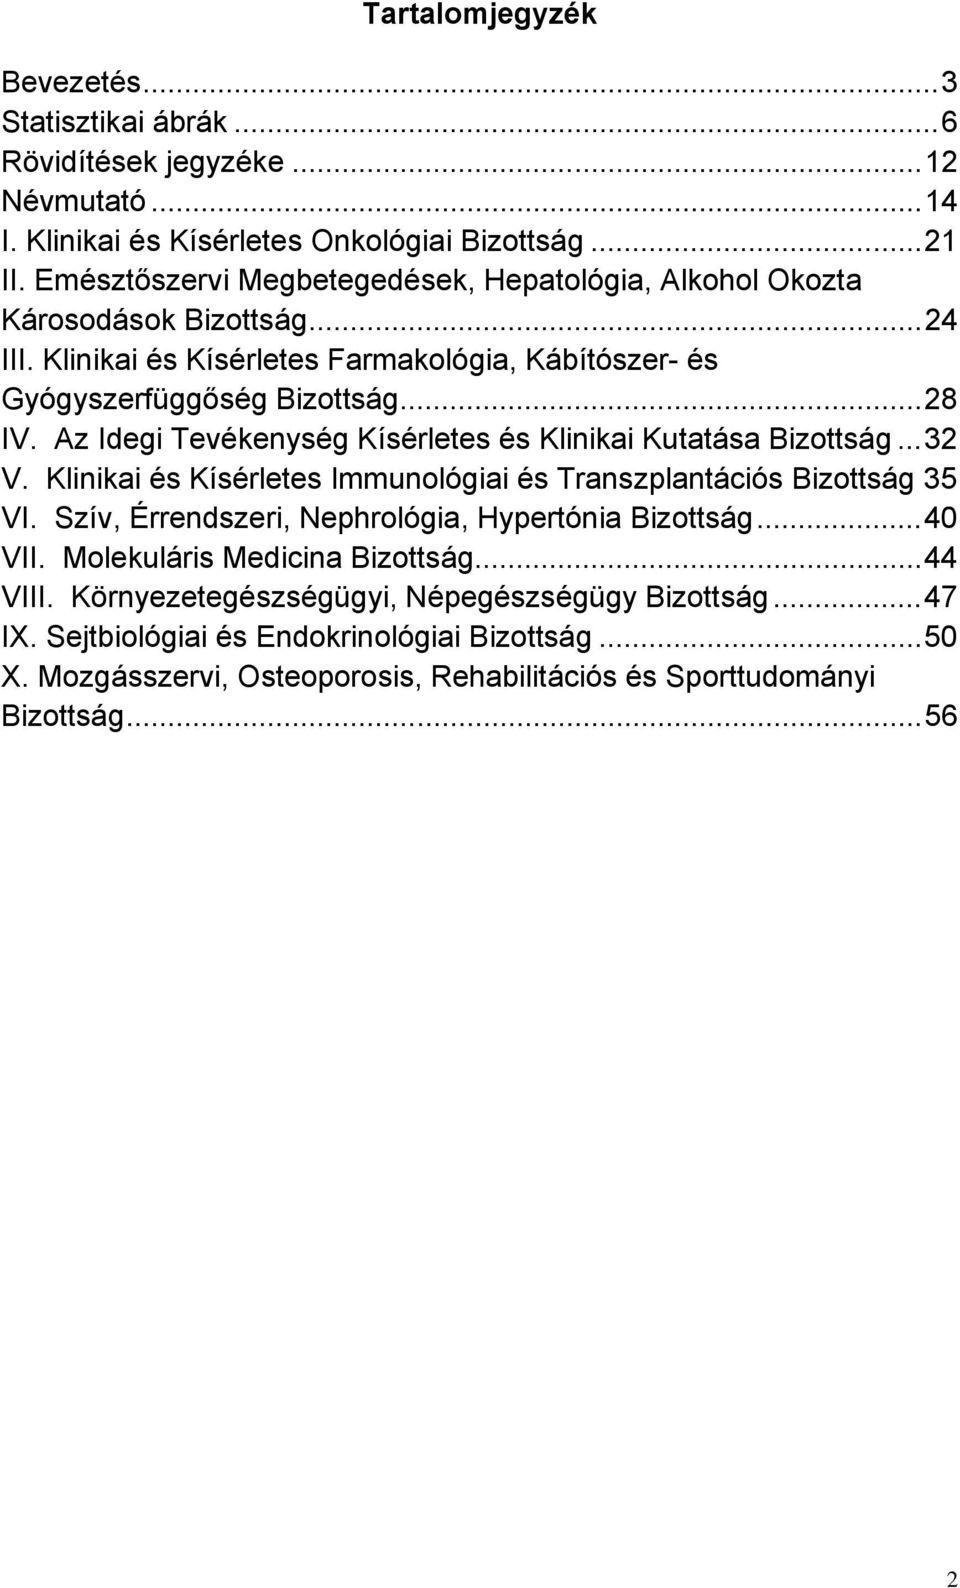 Az Idegi Tevékenység Kísérletes és Klinikai Kutatása Bizottság...32 V. Klinikai és Kísérletes Immunológiai és Transzplantációs Bizottság 35 VI.